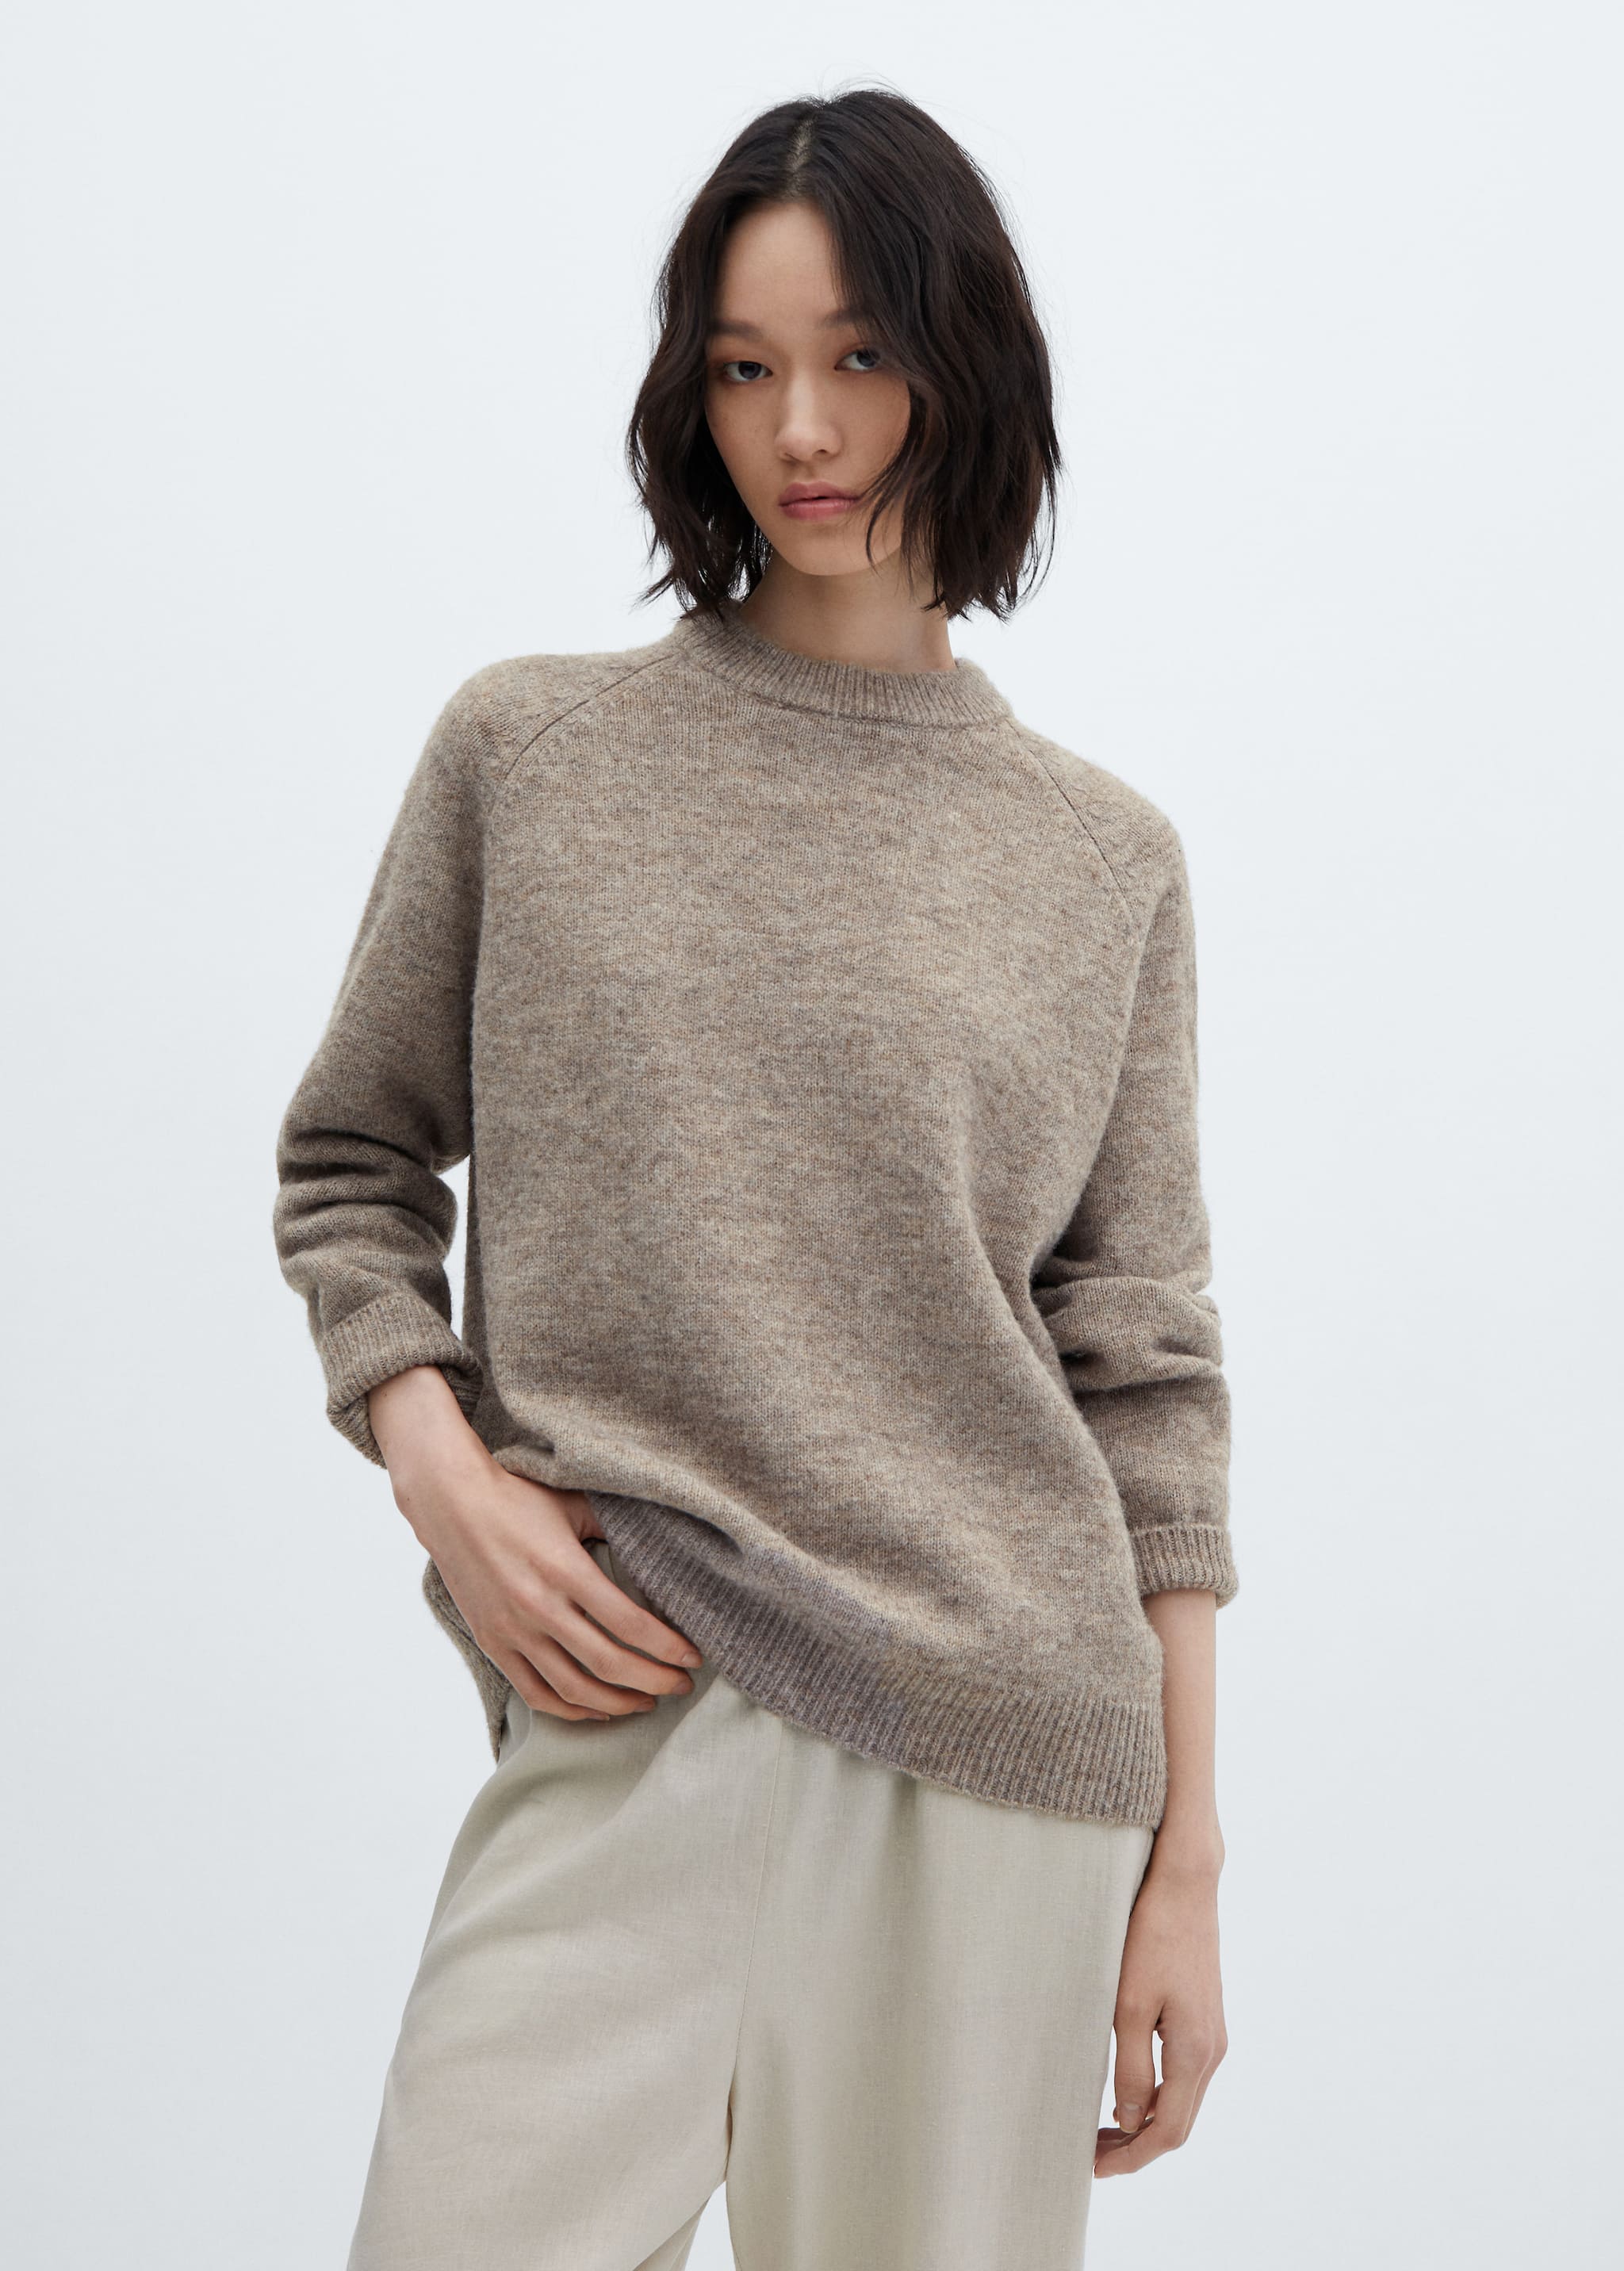 Cotton-linen round-neck knitted sweater - Medium plane